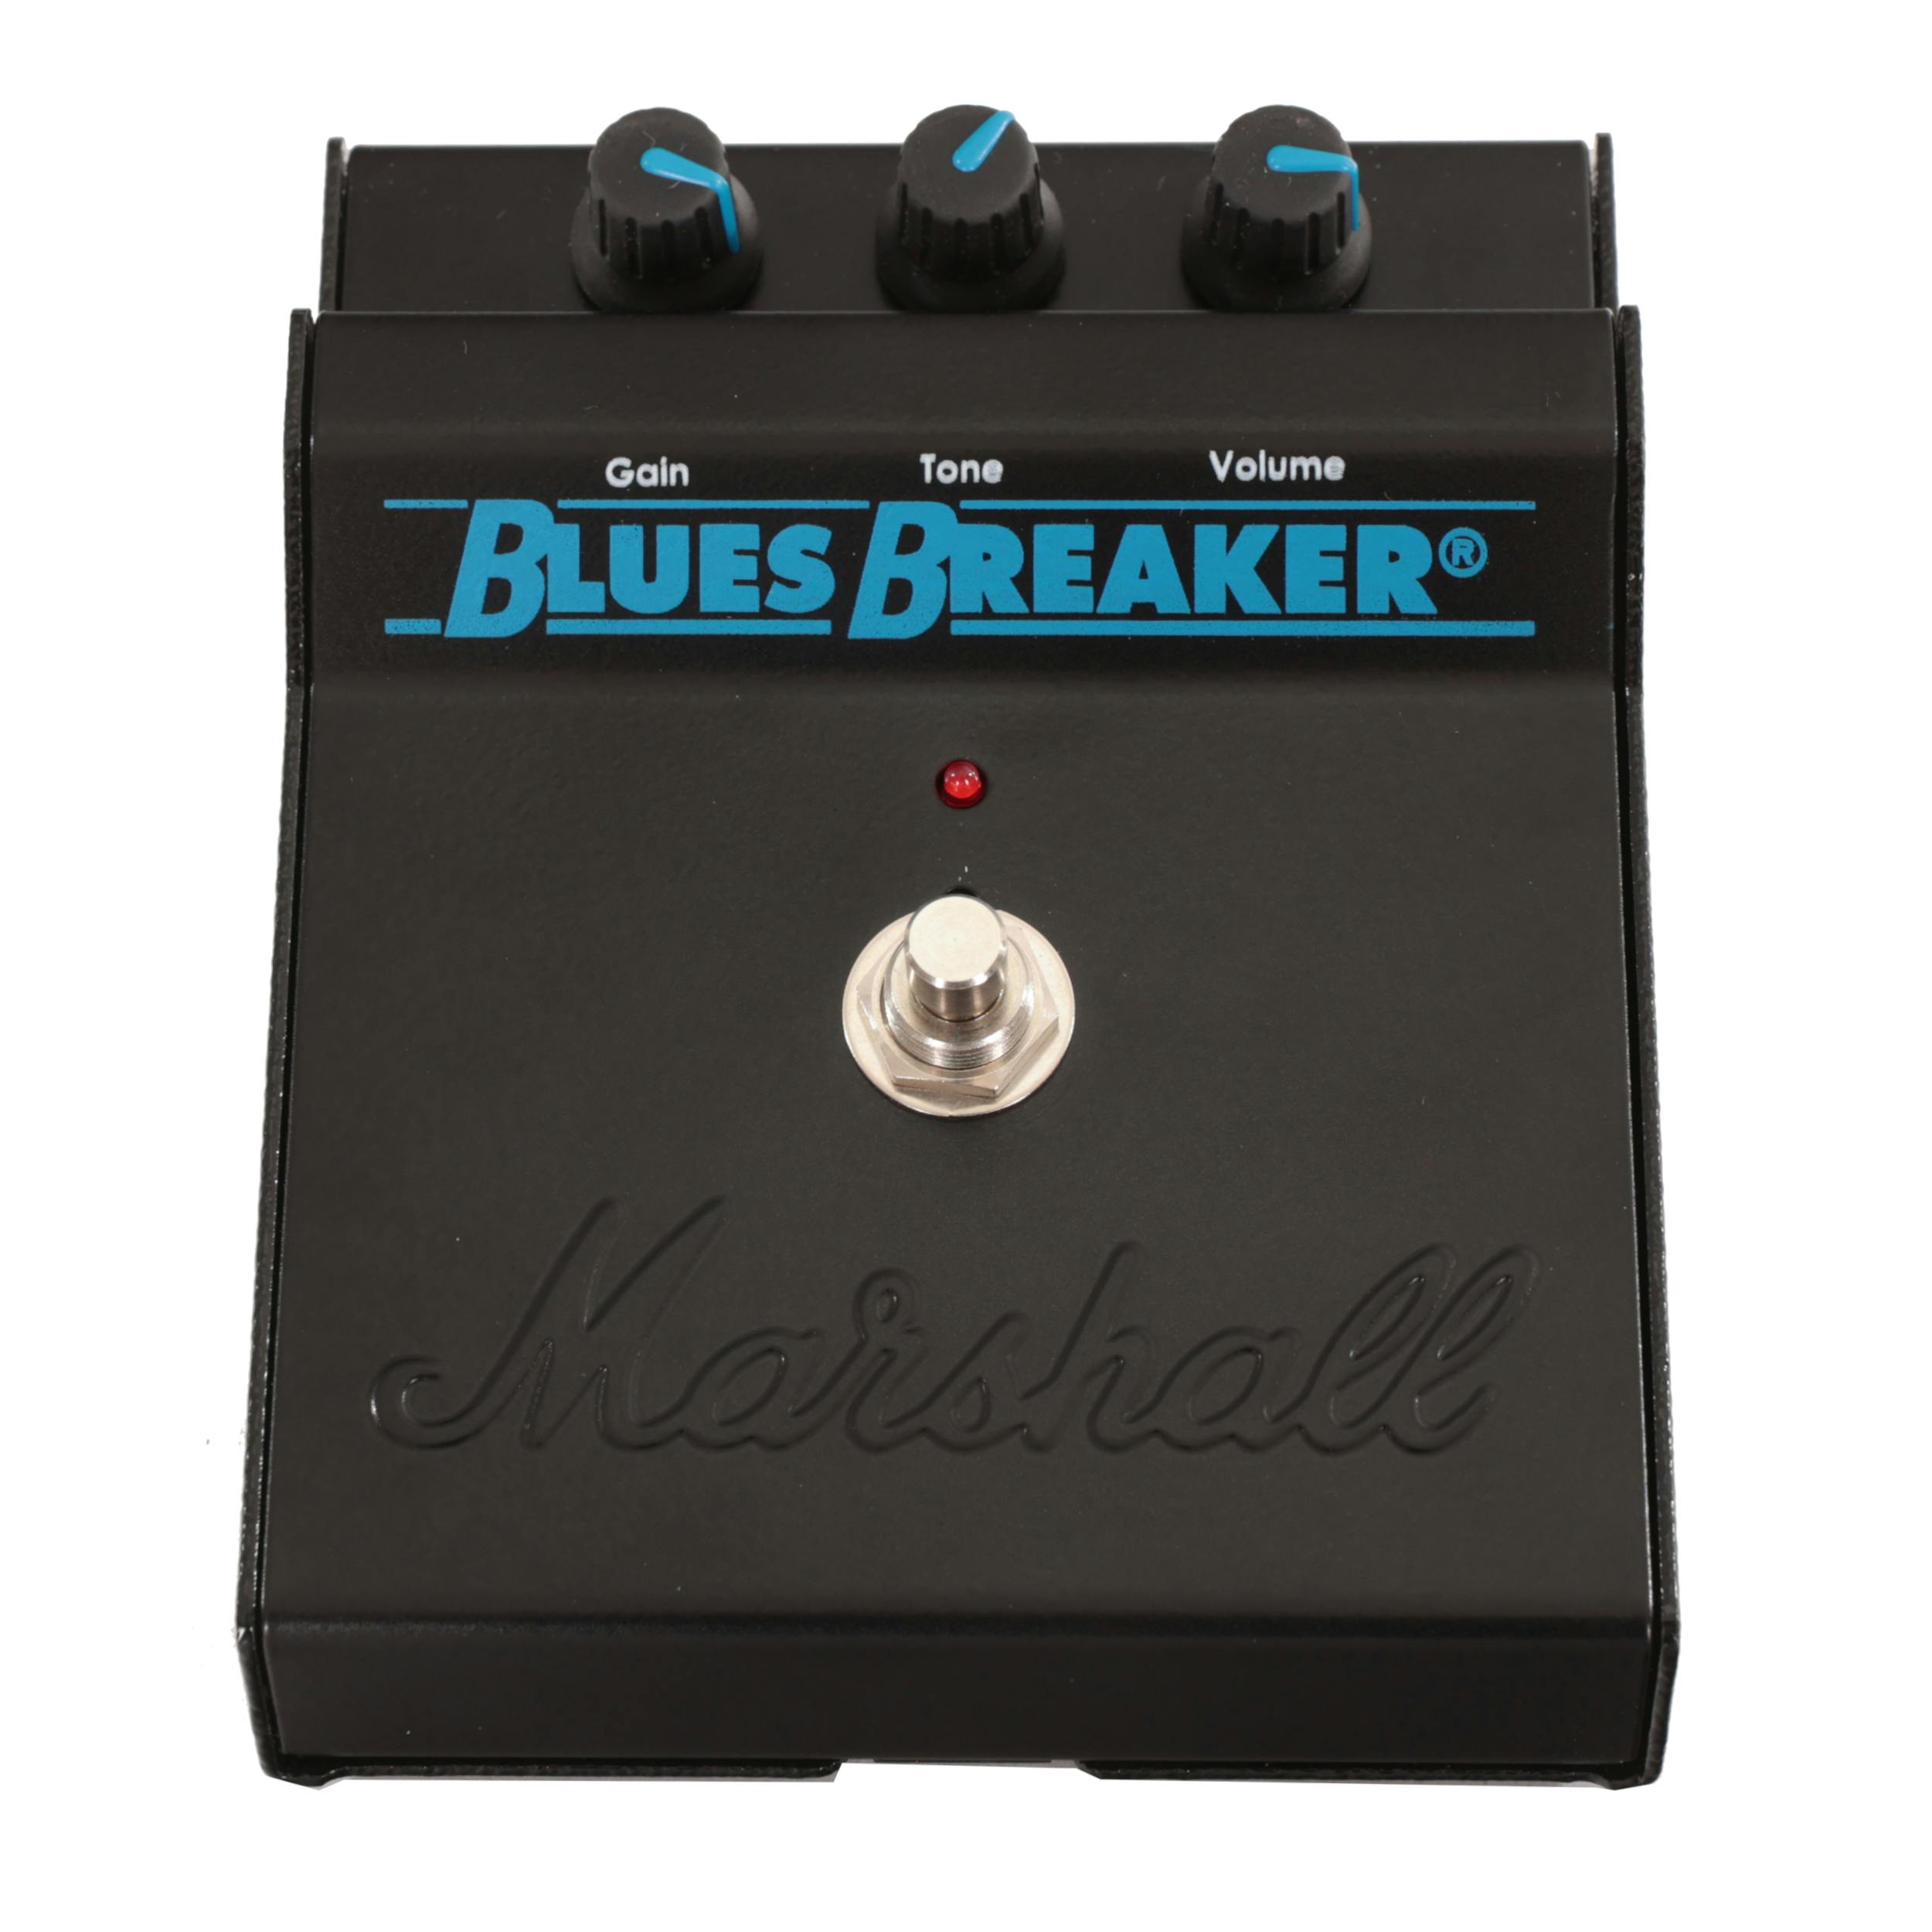 世界的に有名な Marshall 60th bluesbreaker ブルースブレイカー